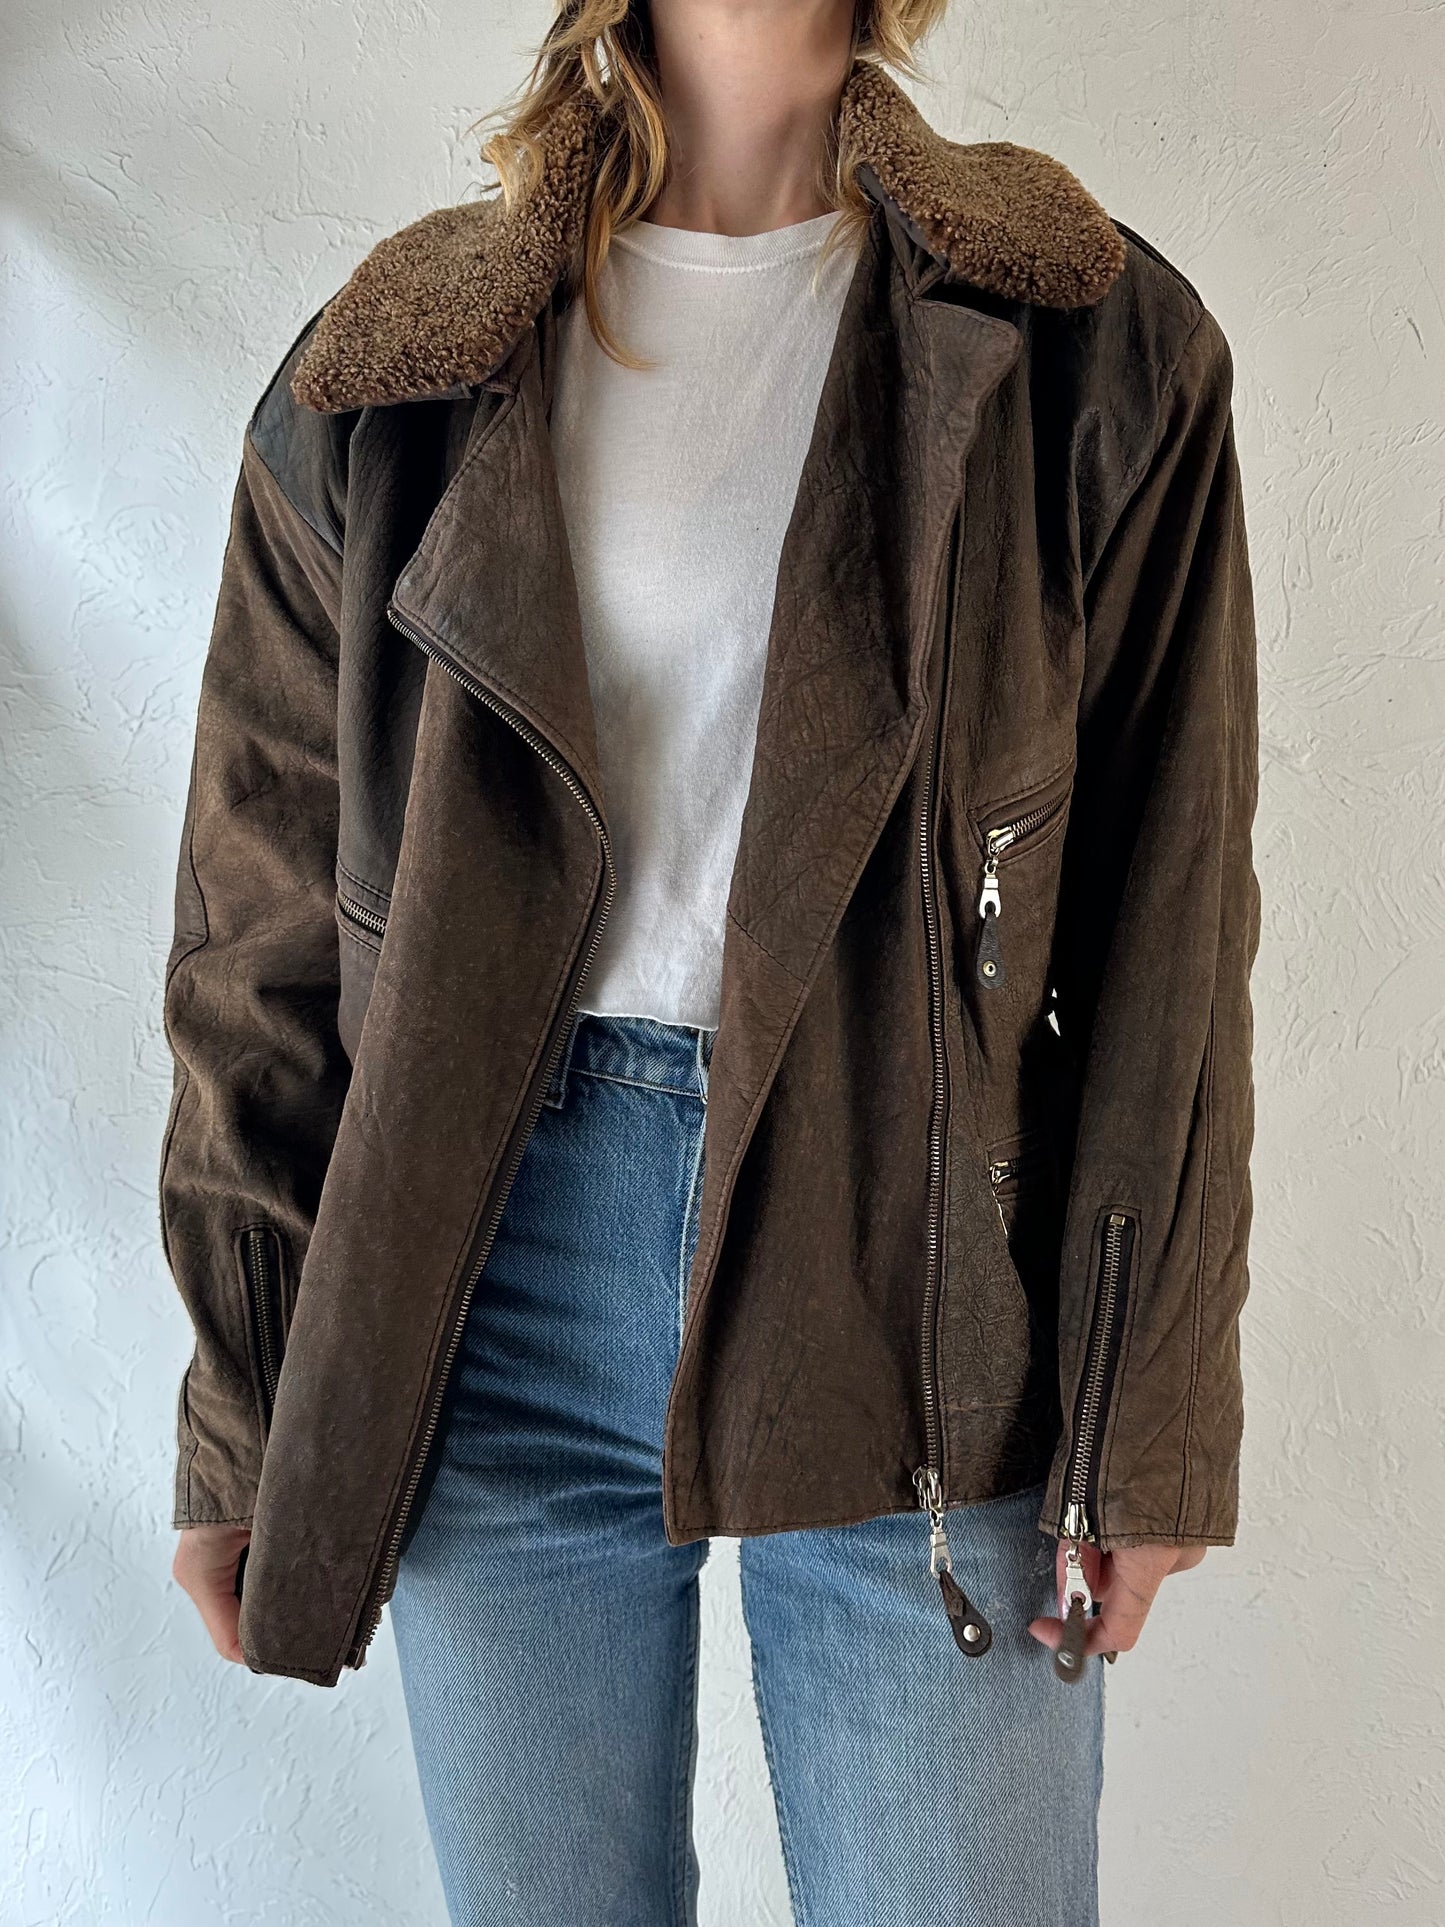 Vintage Brown Suede Leather Jacket / Medium